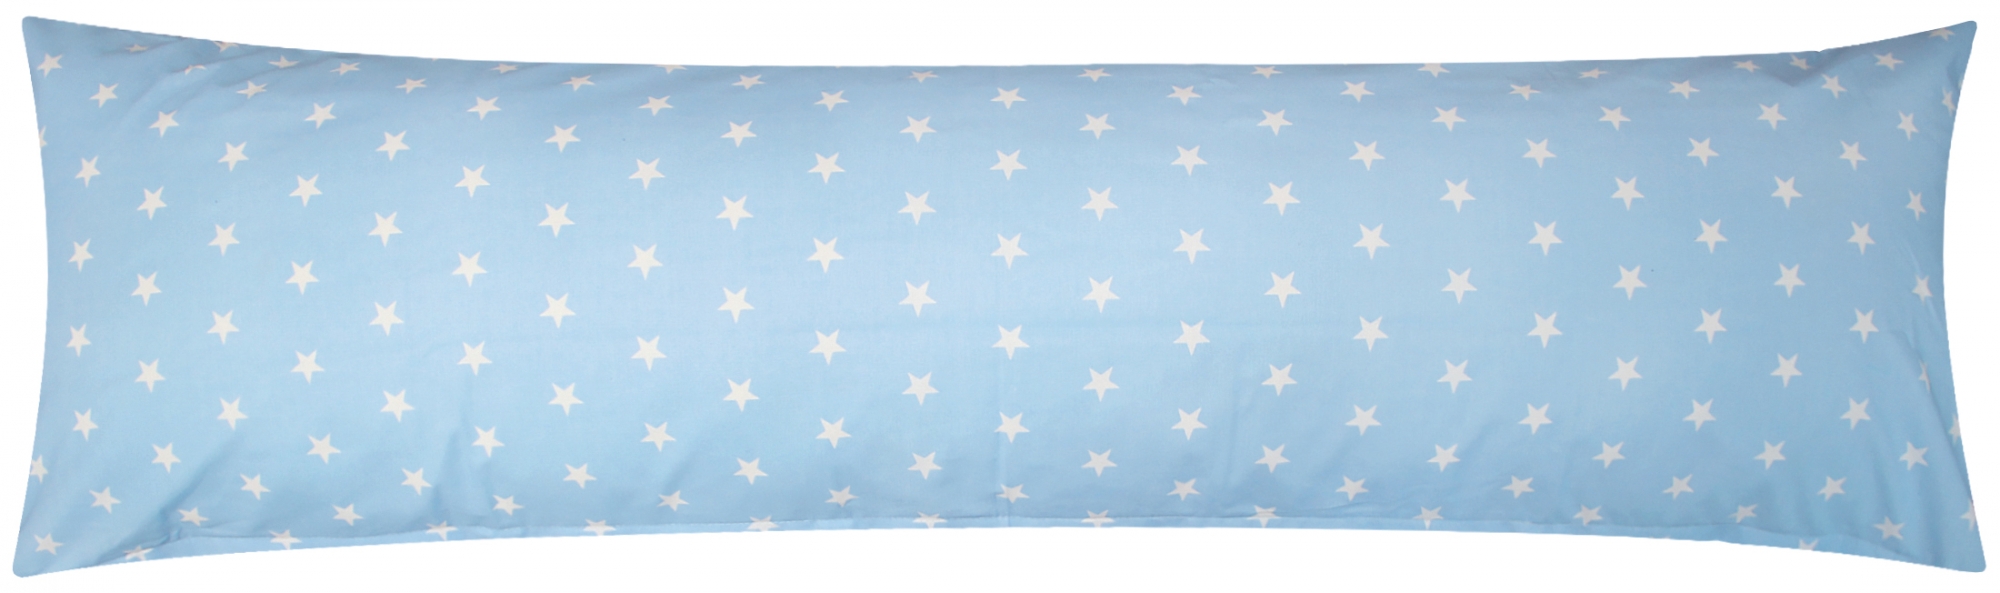 Baumwoll Renforcé Seitenschläferkissen Bezug 40x145cm - Sterne in Blau und Weiß - 100% Baumwolle Stillkissenbezug (376-2-Blau)